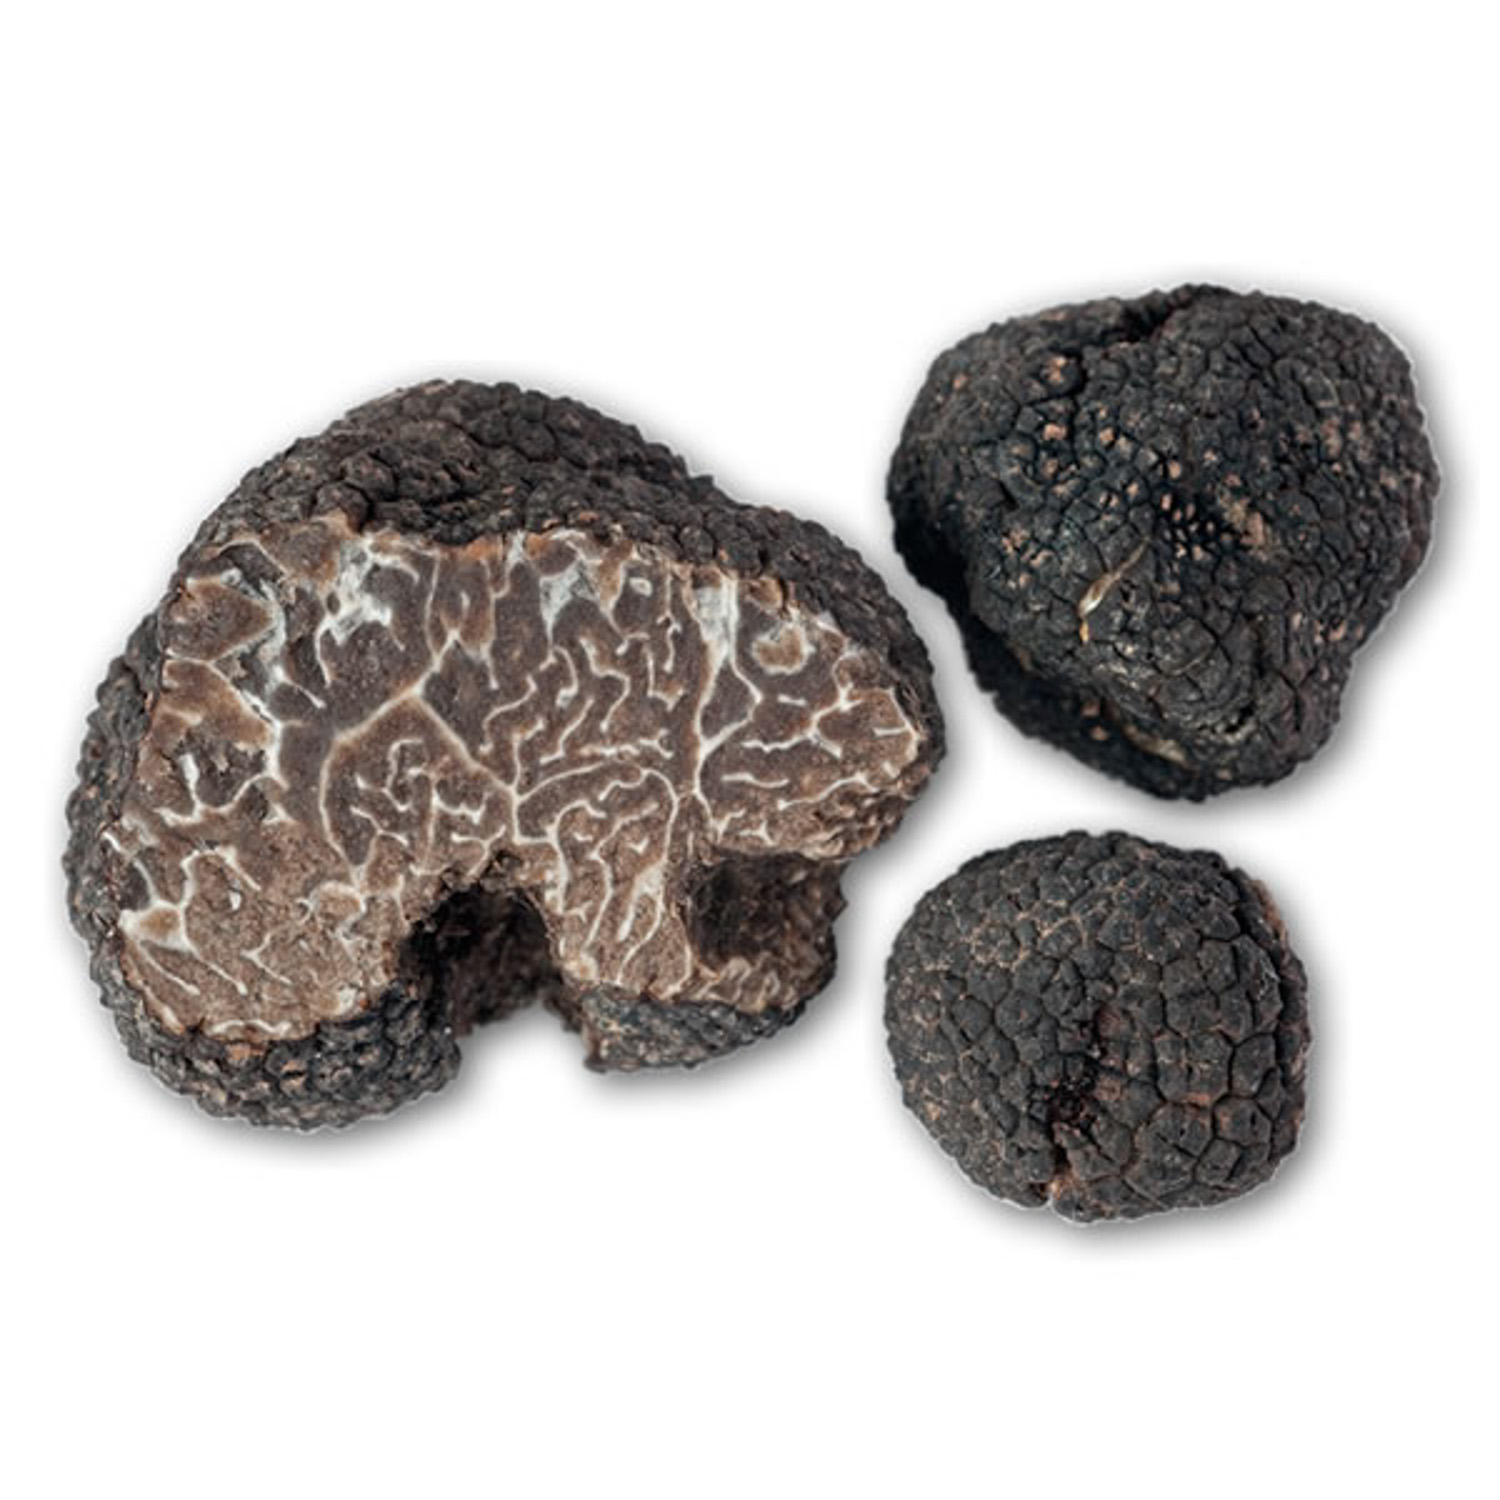 Белый и черный трюфель - неогранённые бриллианты царства грибов - грибы собираем